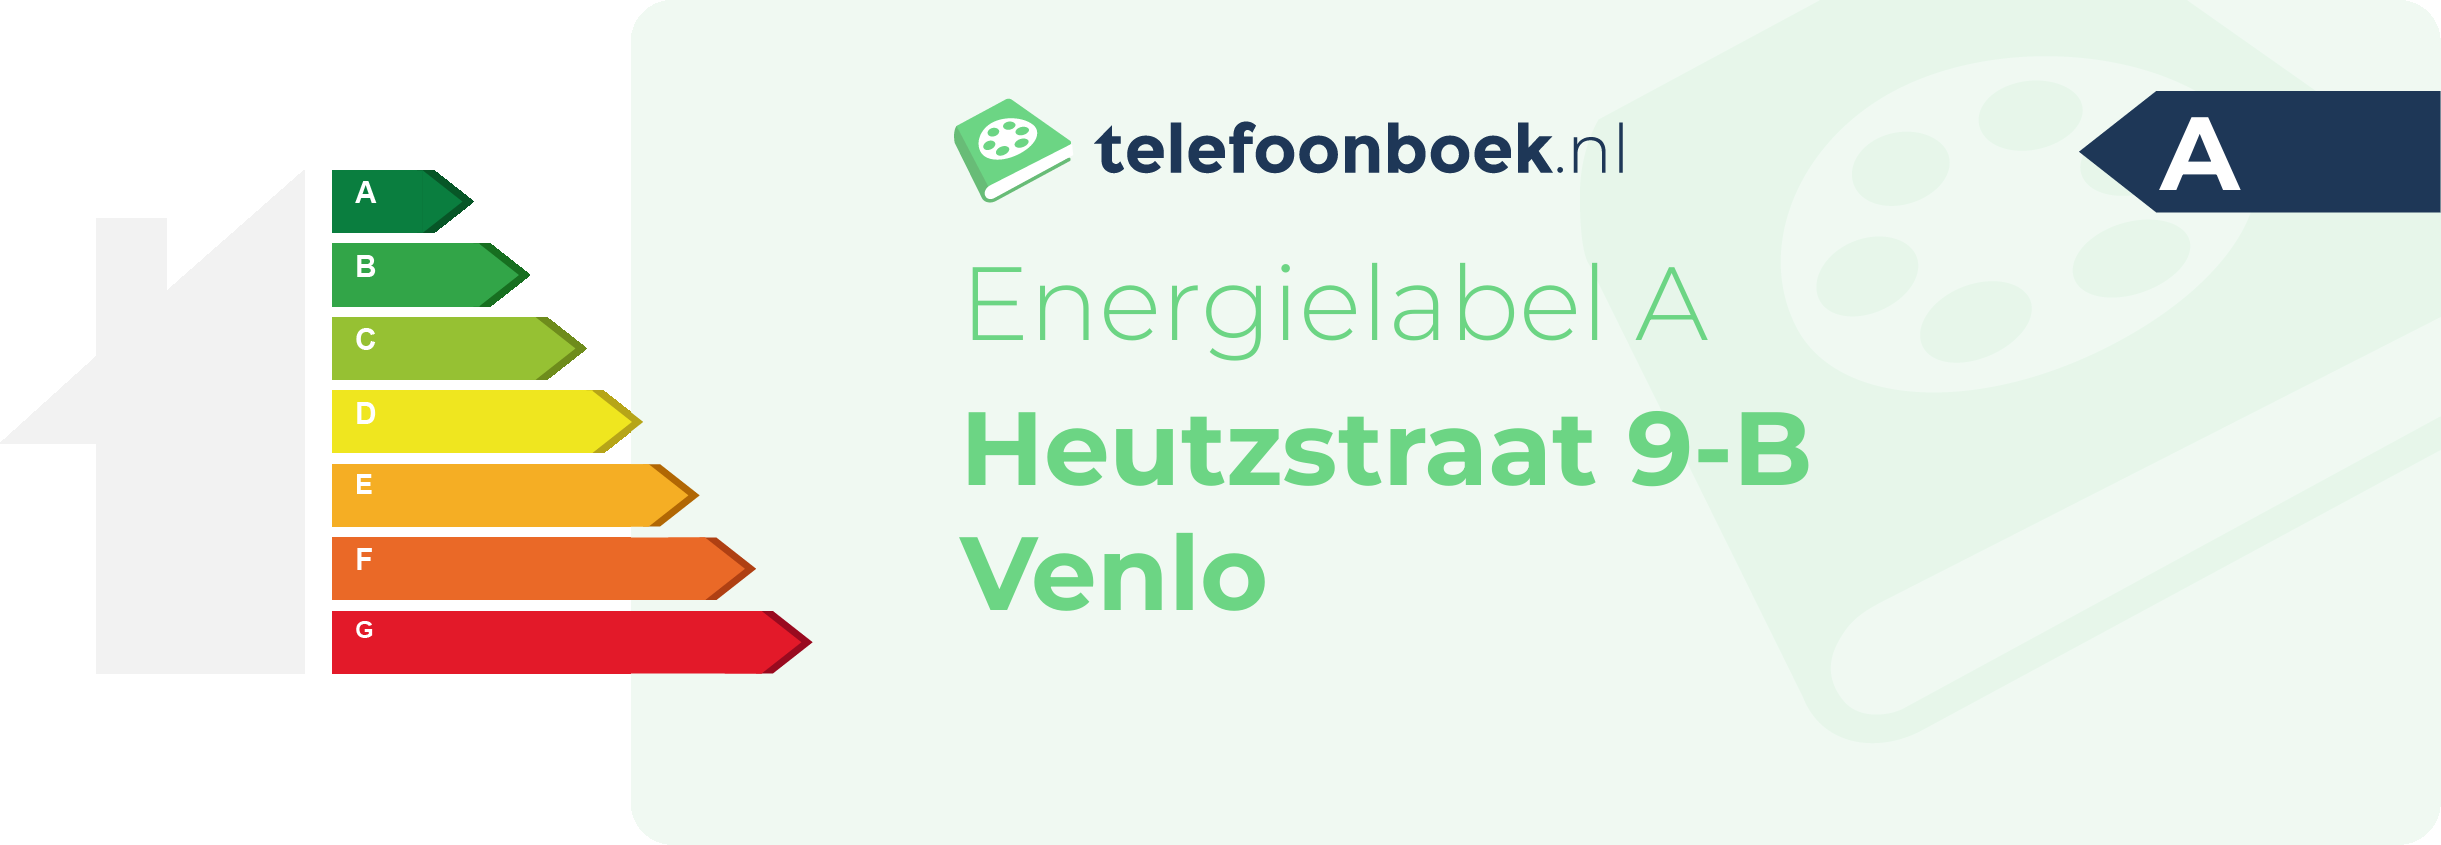 Energielabel Heutzstraat 9-B Venlo